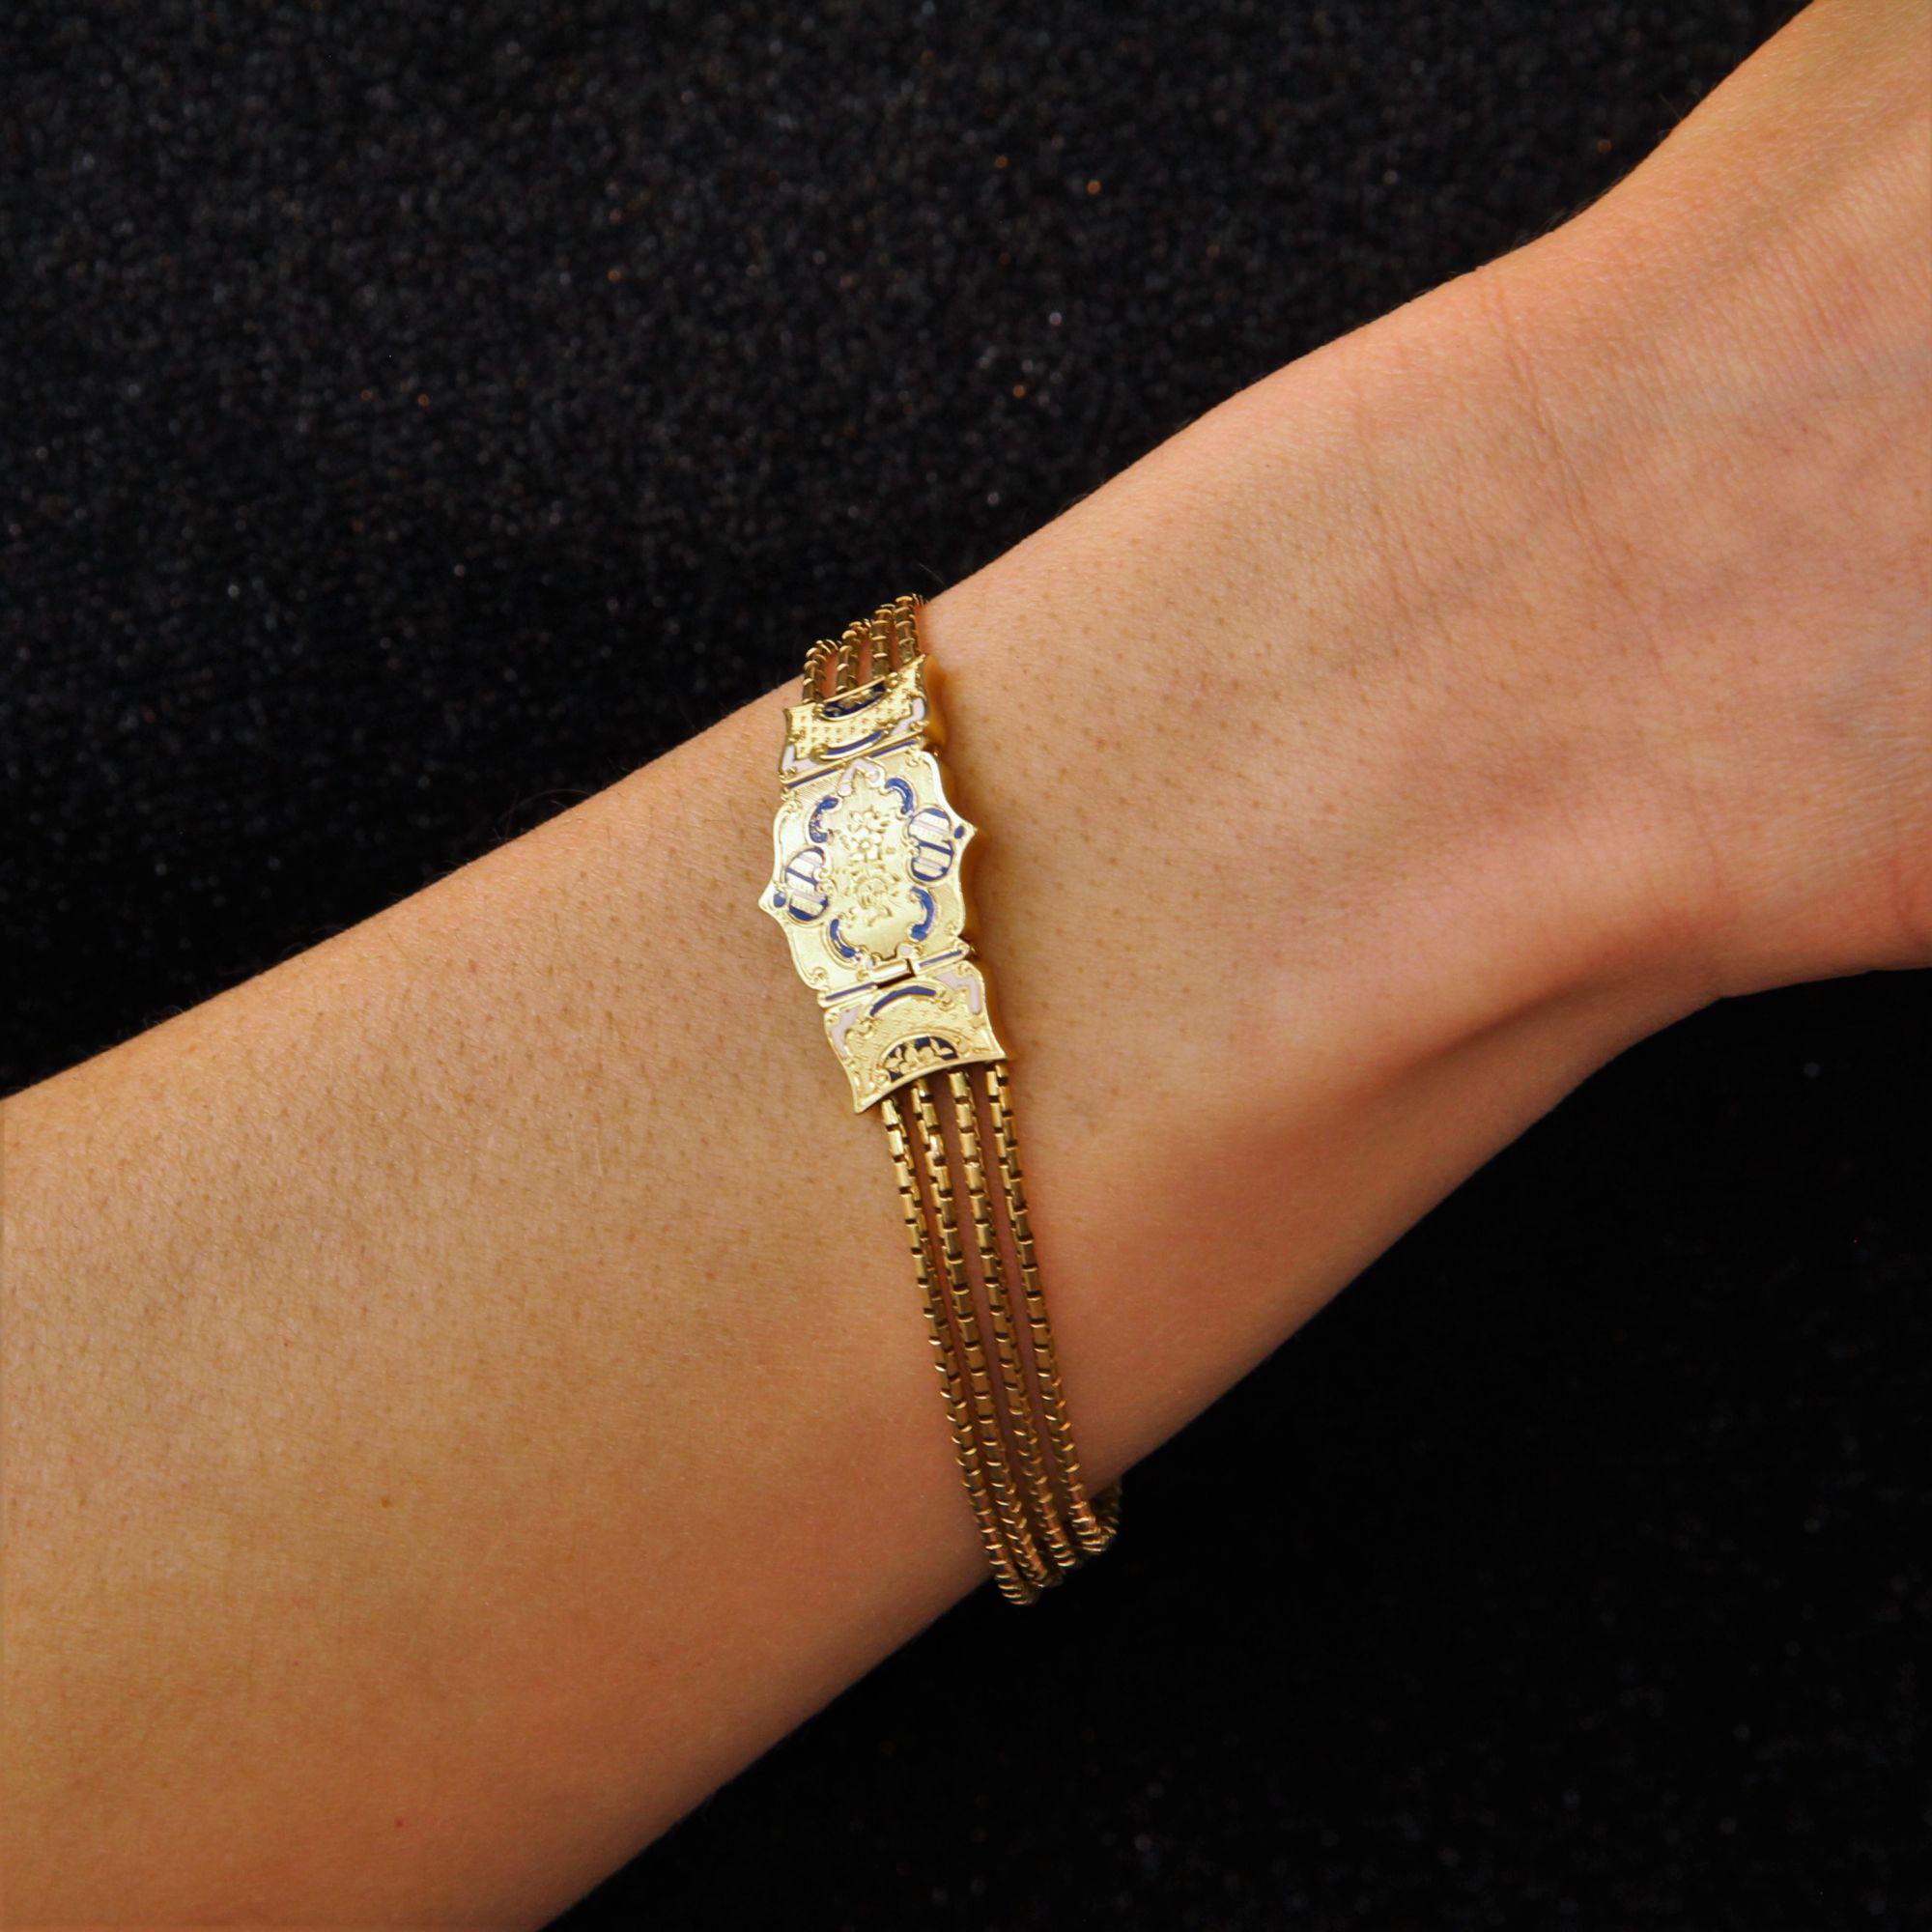 Bracelet en or jaune 18 carats, poinçon tête d'aigle.
Magnifique bracelet ancien, il est constitué de 4 fines chaînes dites arc romain, attachées à un fermoir à cliquet de forme rectangulaire avec fond gravé, guilloché, gravé de fleurs et